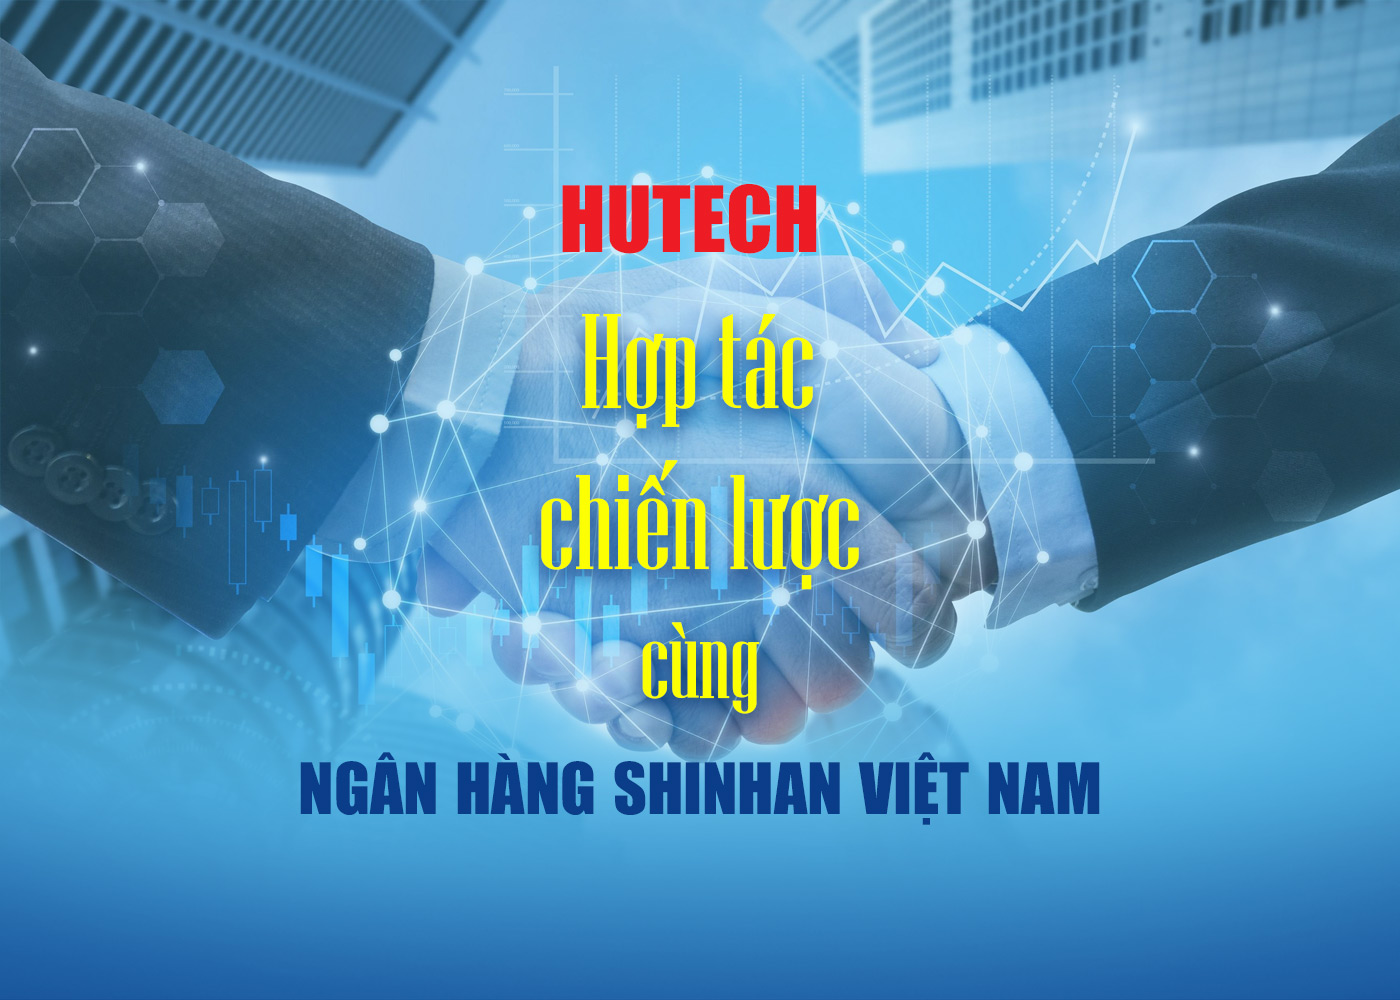 HUTECH hợp tác chiến lược cùng Ngân hàng Shinhan Việt Nam - Ảnh 1